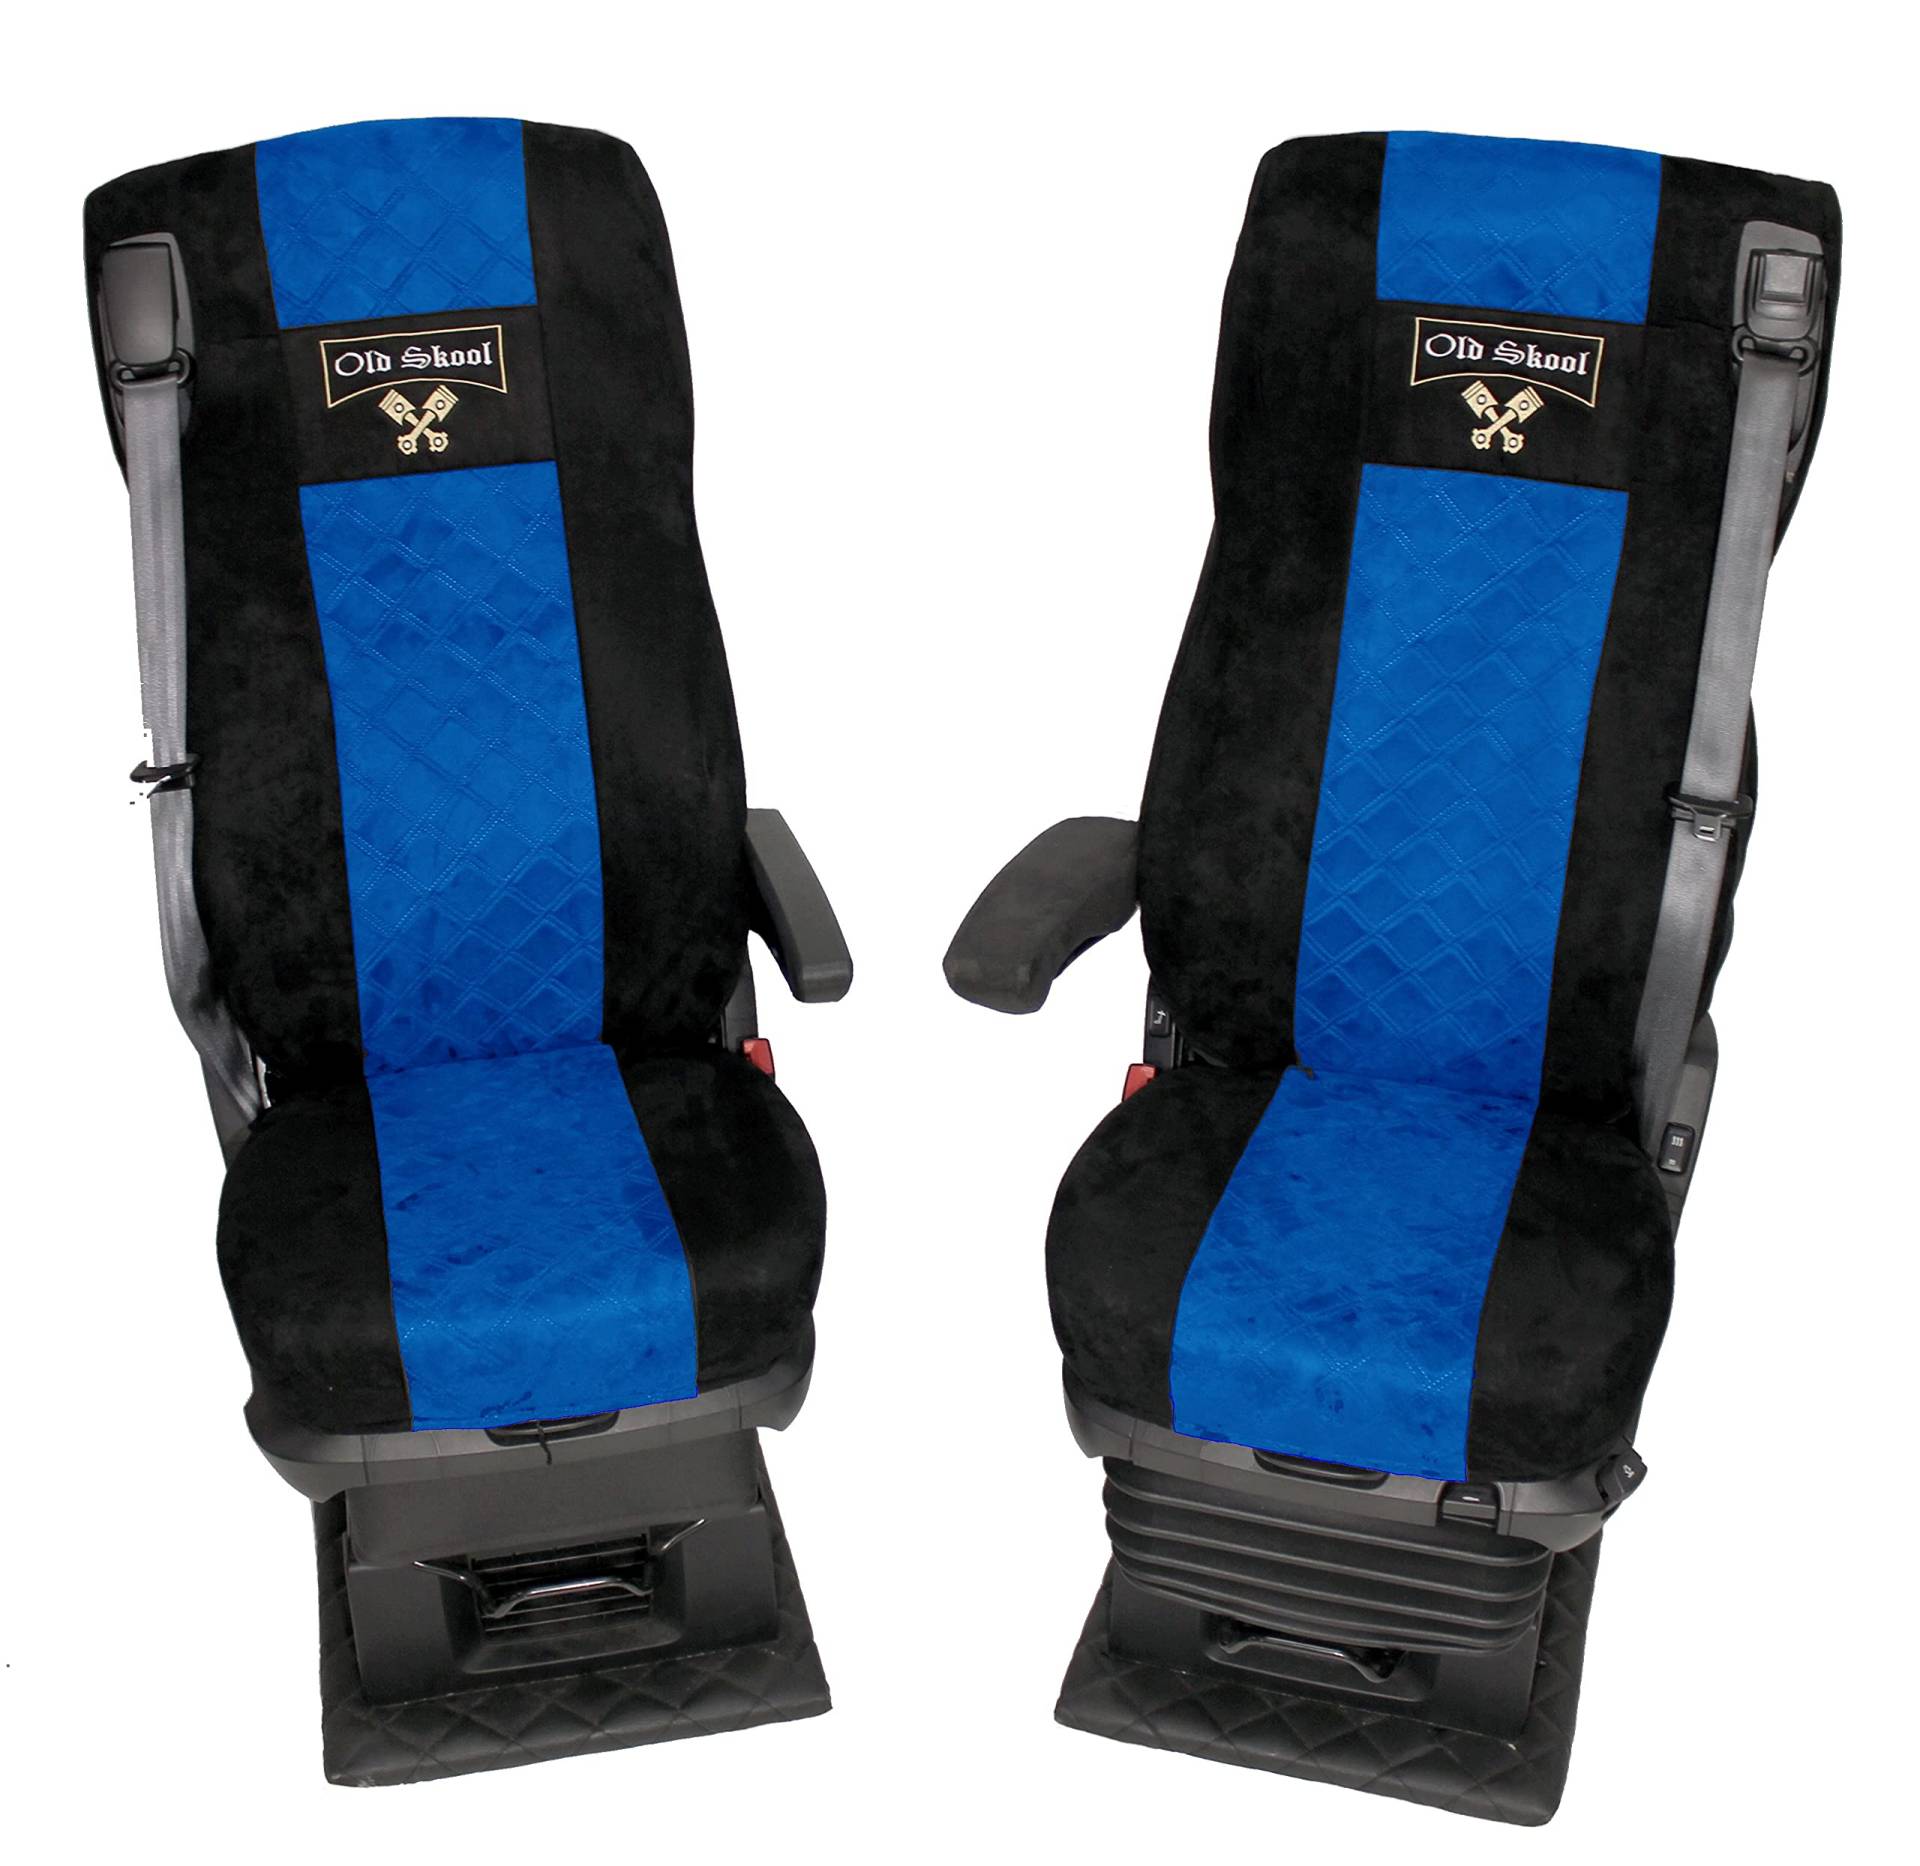 LKW Sitzbezüge für DAF xf 106 Grammer Sitze schwarz blau Old Skool von Adomo